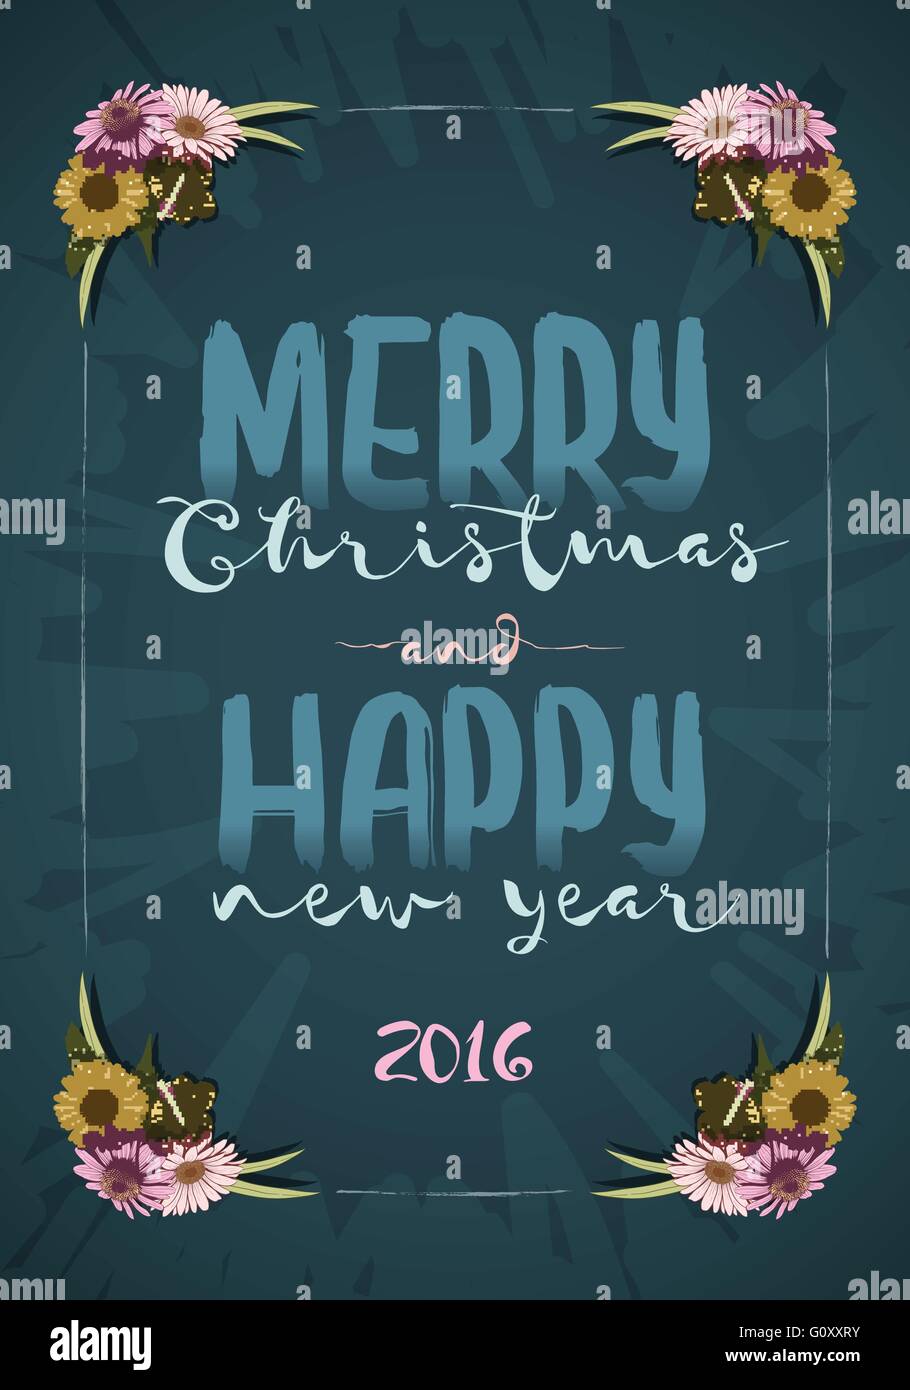 Natale e felice anno nuovo messaggio board con colorati vintage disegnati a mano fiori. Illustrazione Vettoriale